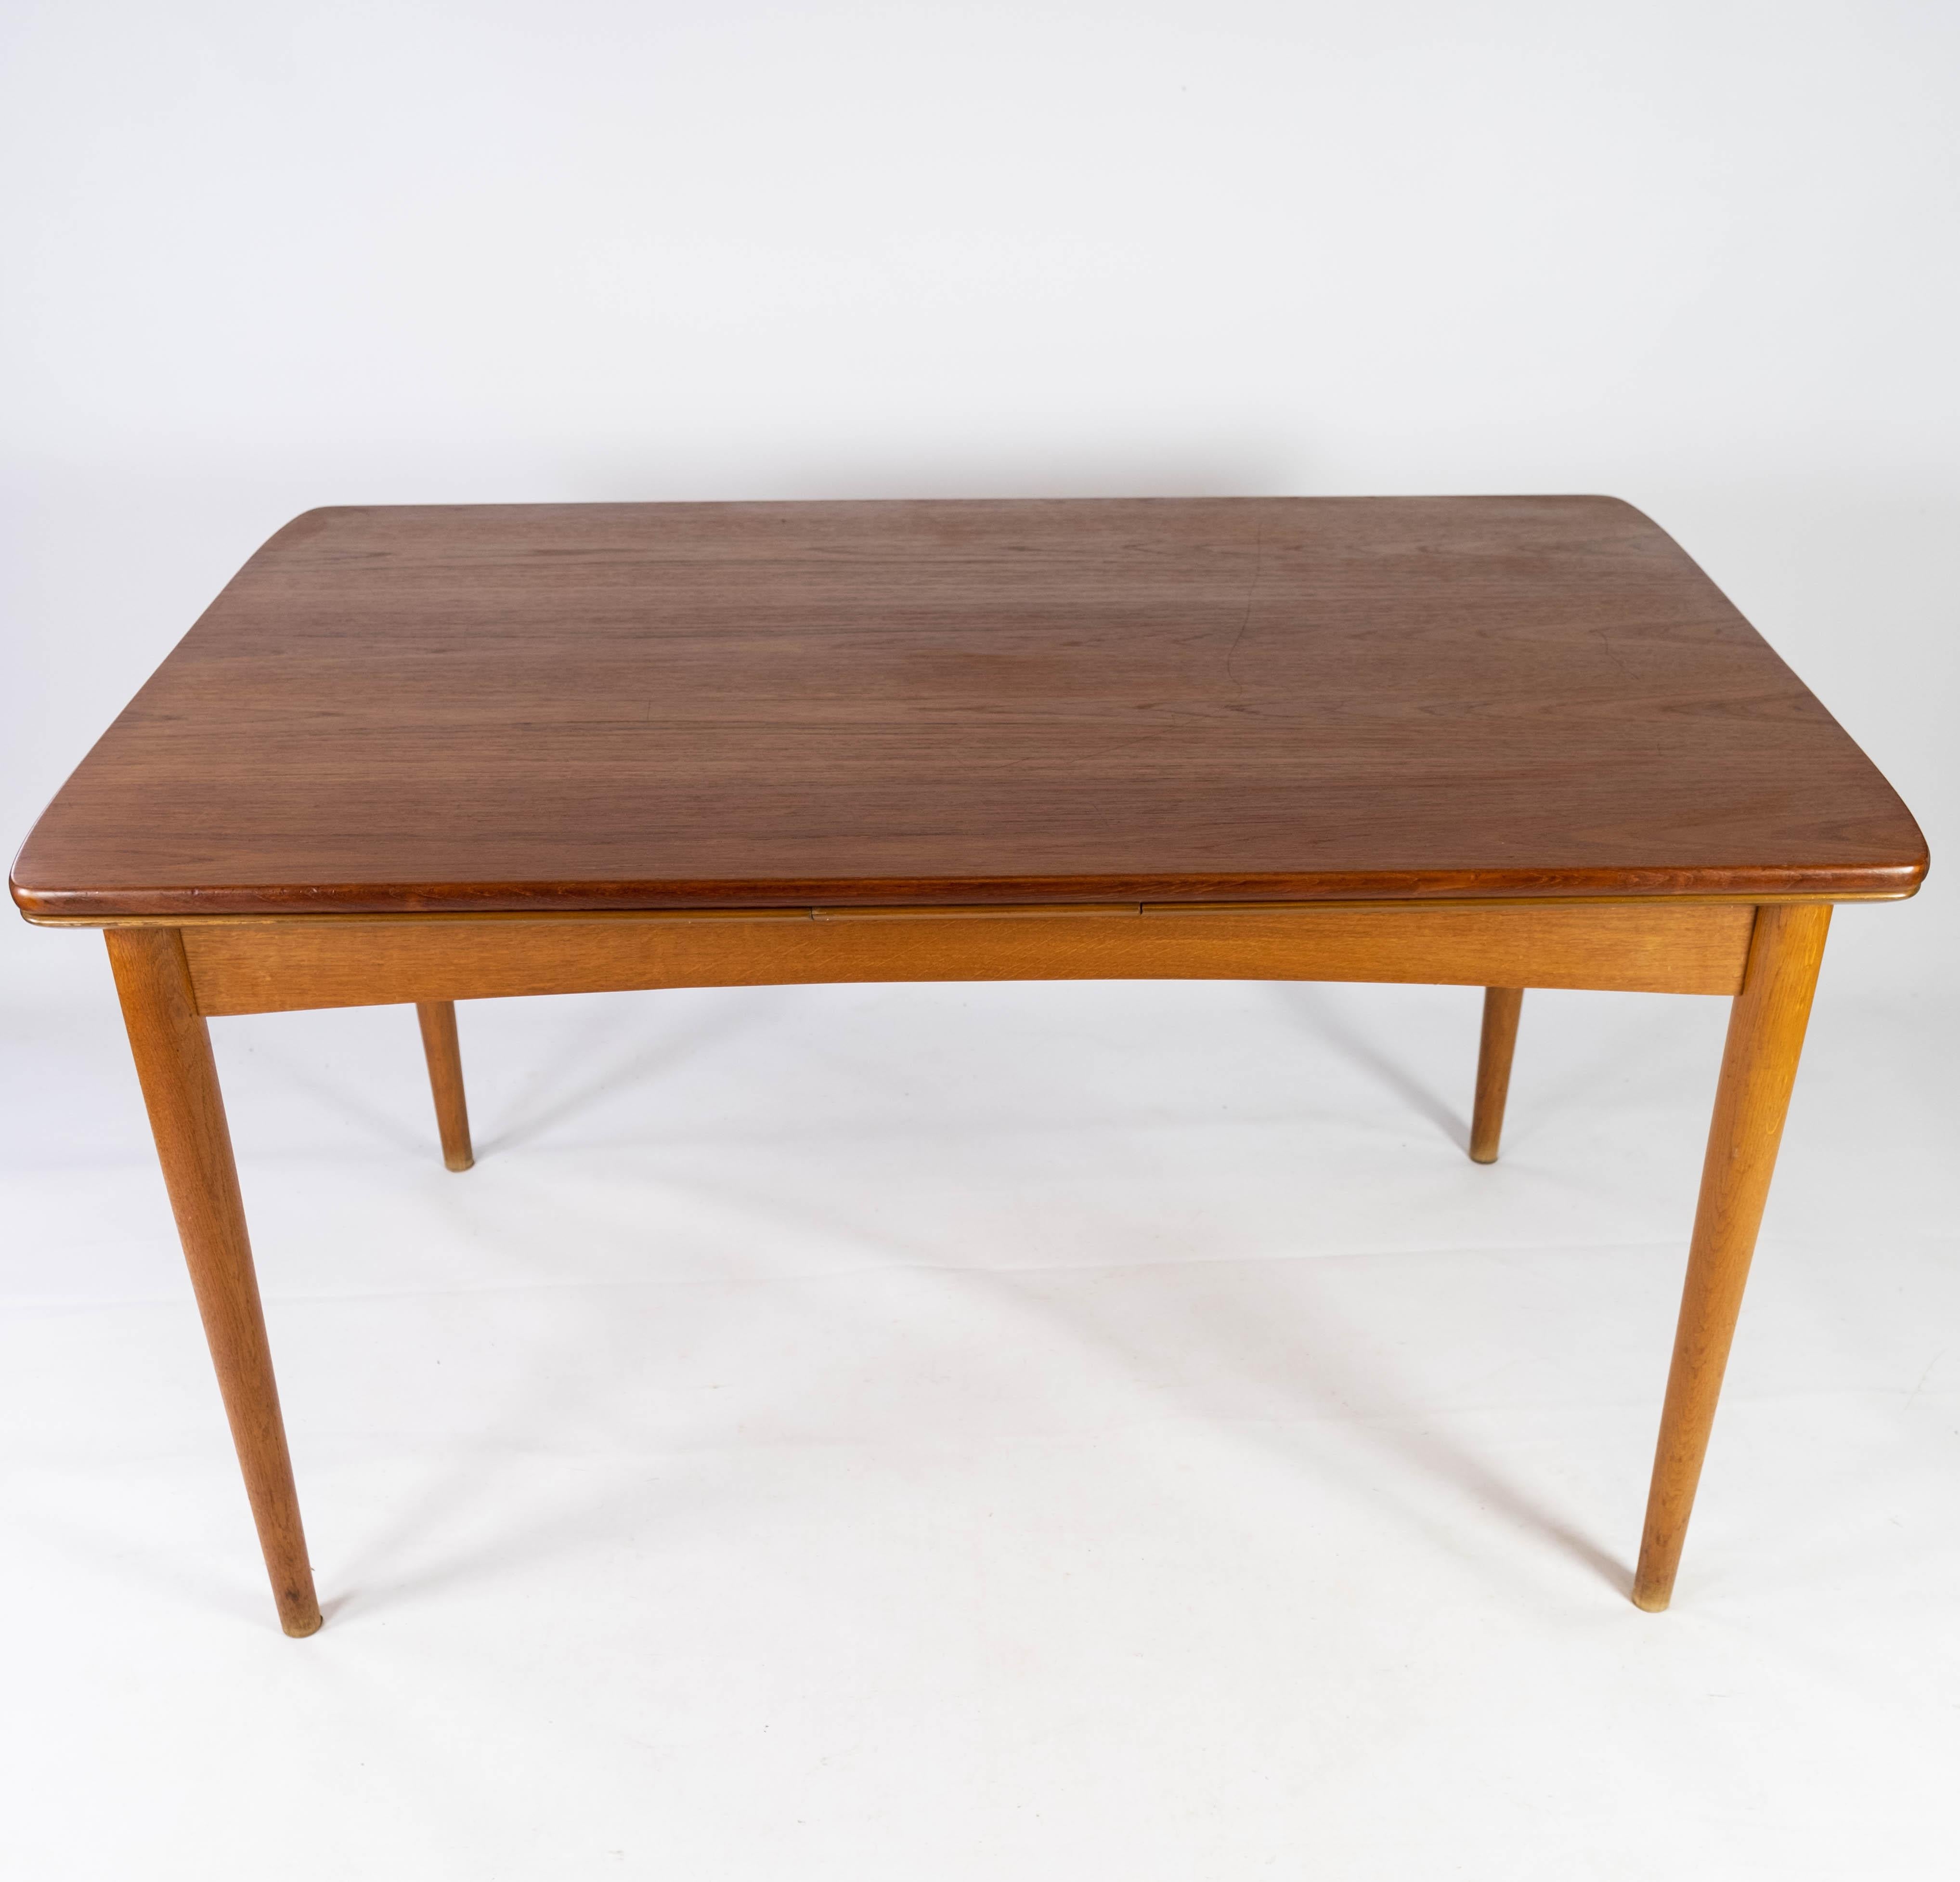 Cette table de salle à manger incarne la quintessence du design danois des années 1960, alliant fonctionnalité et savoir-faire exquis. Fabriqué en teck avec des pieds en chêne, il mélange harmonieusement les matériaux naturels pour créer une pièce